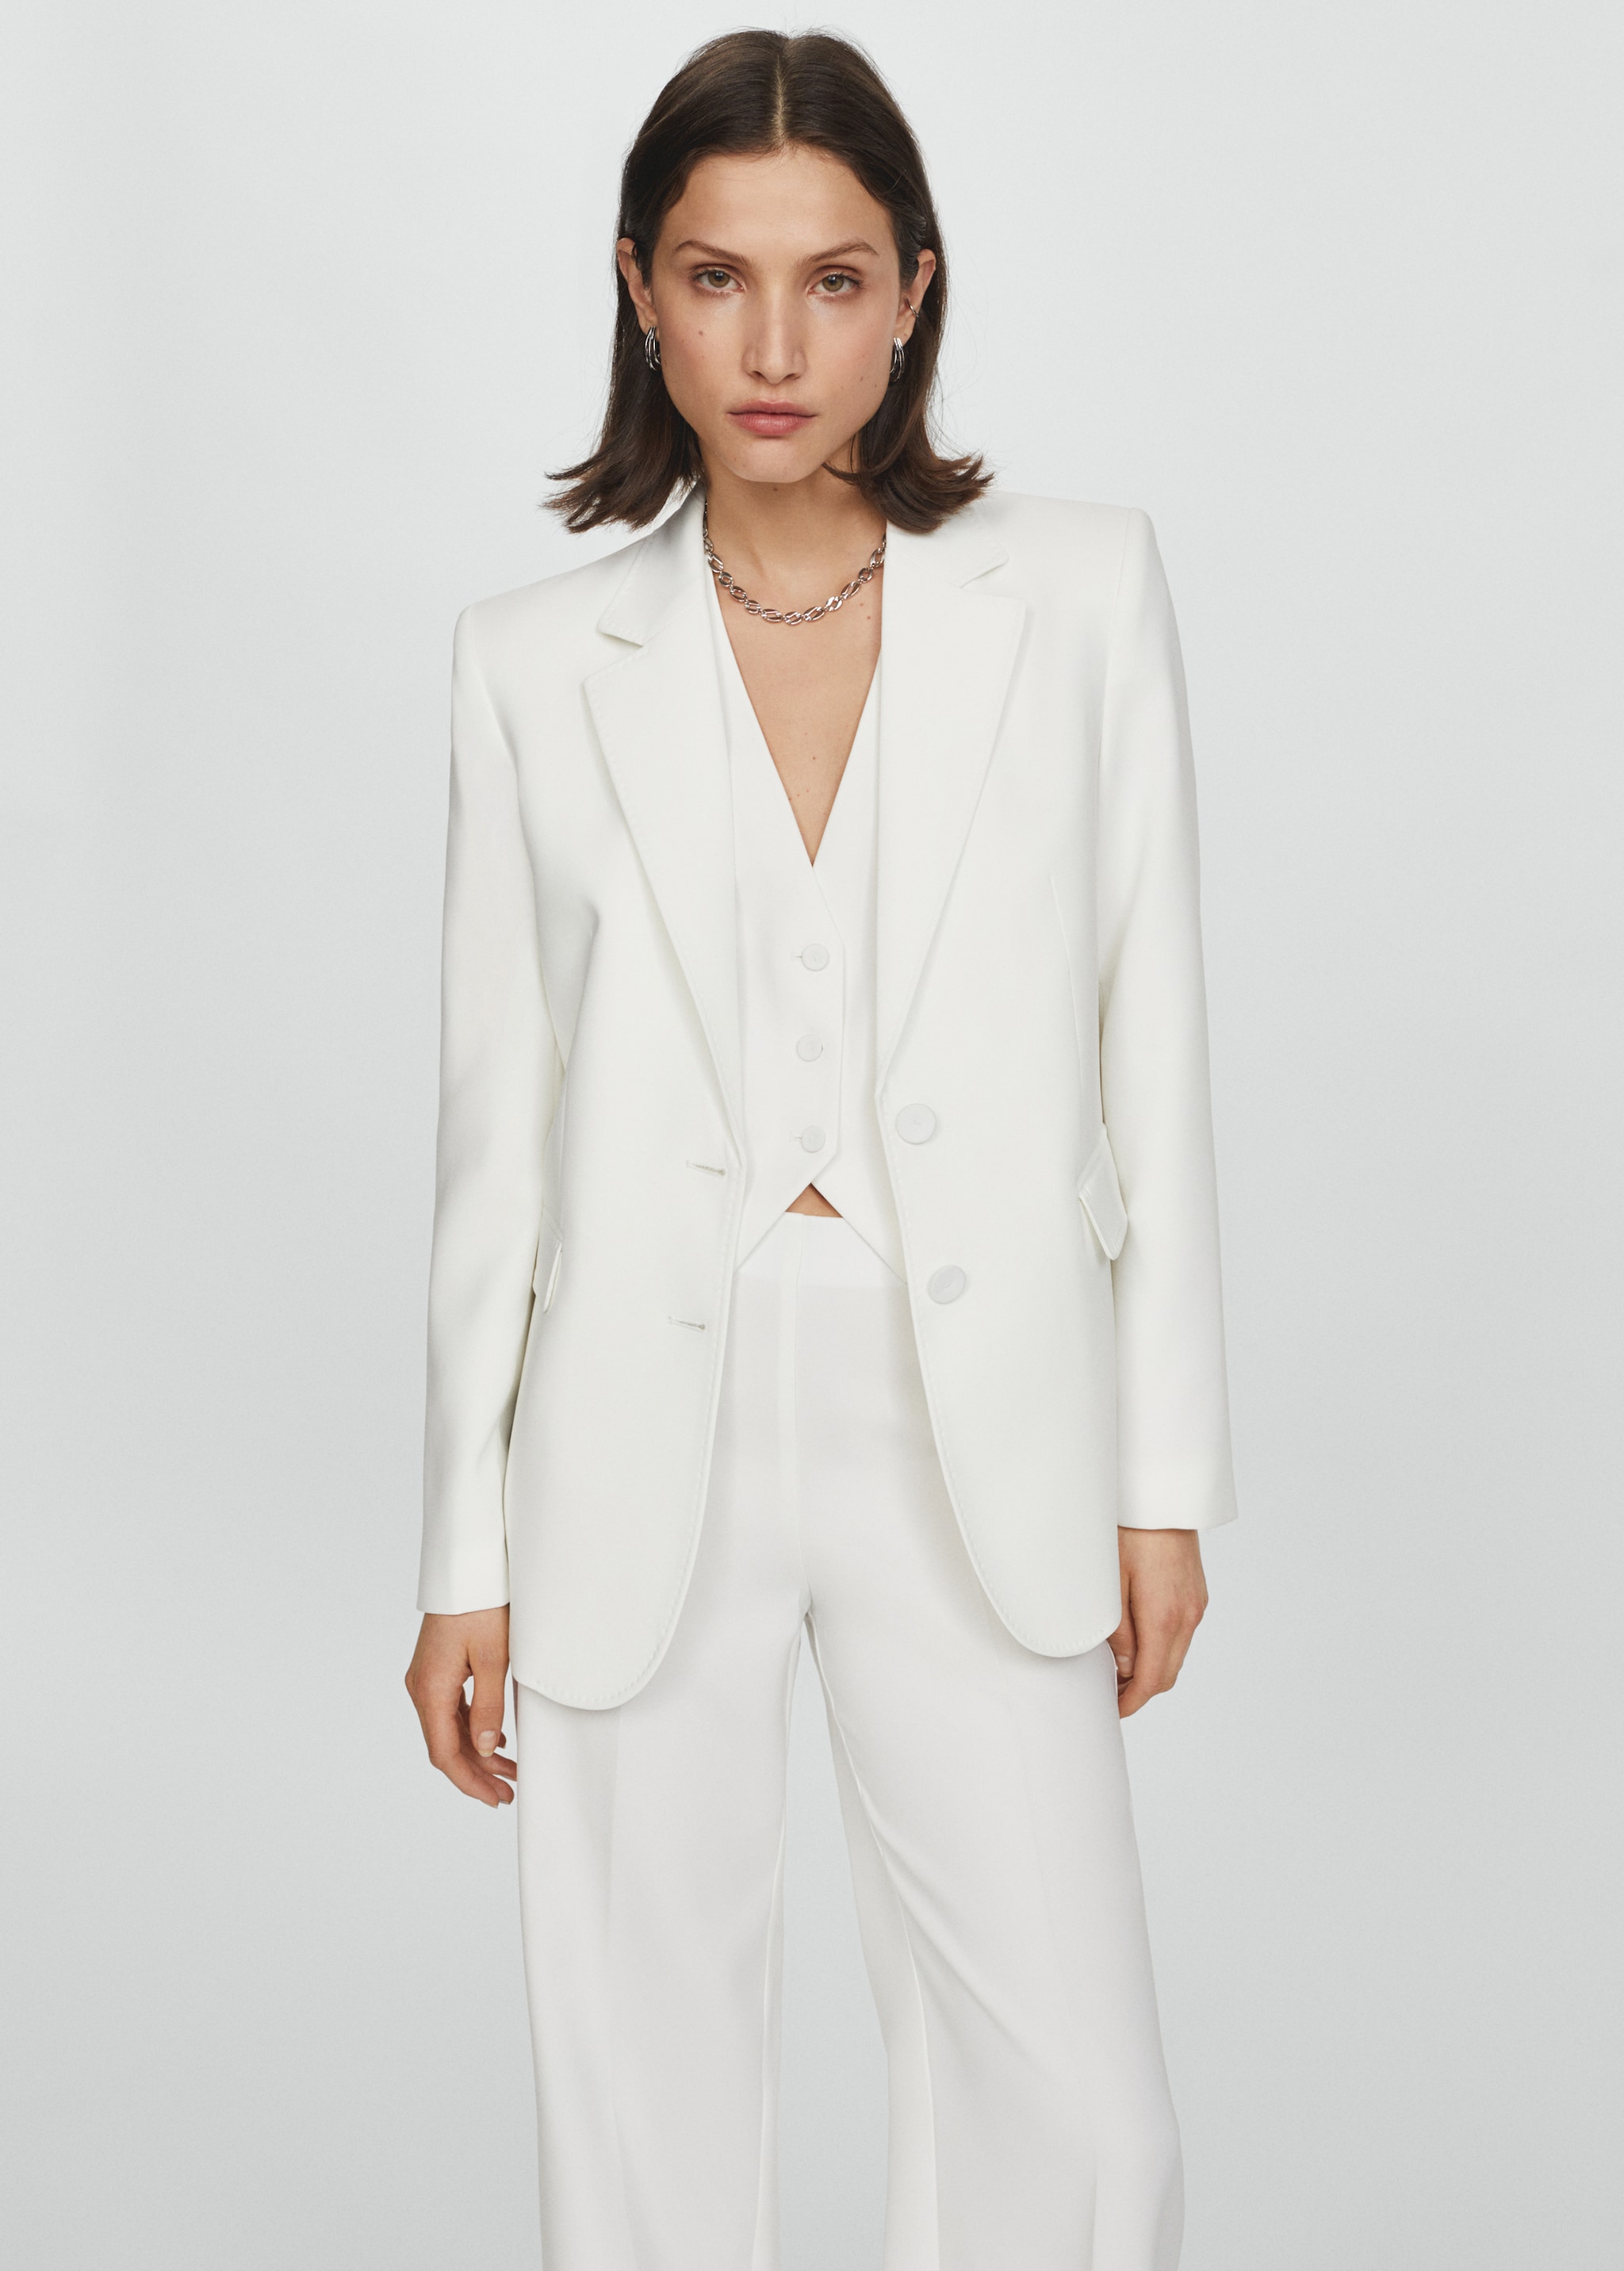 Straight-fit suit jacket - Medium plane